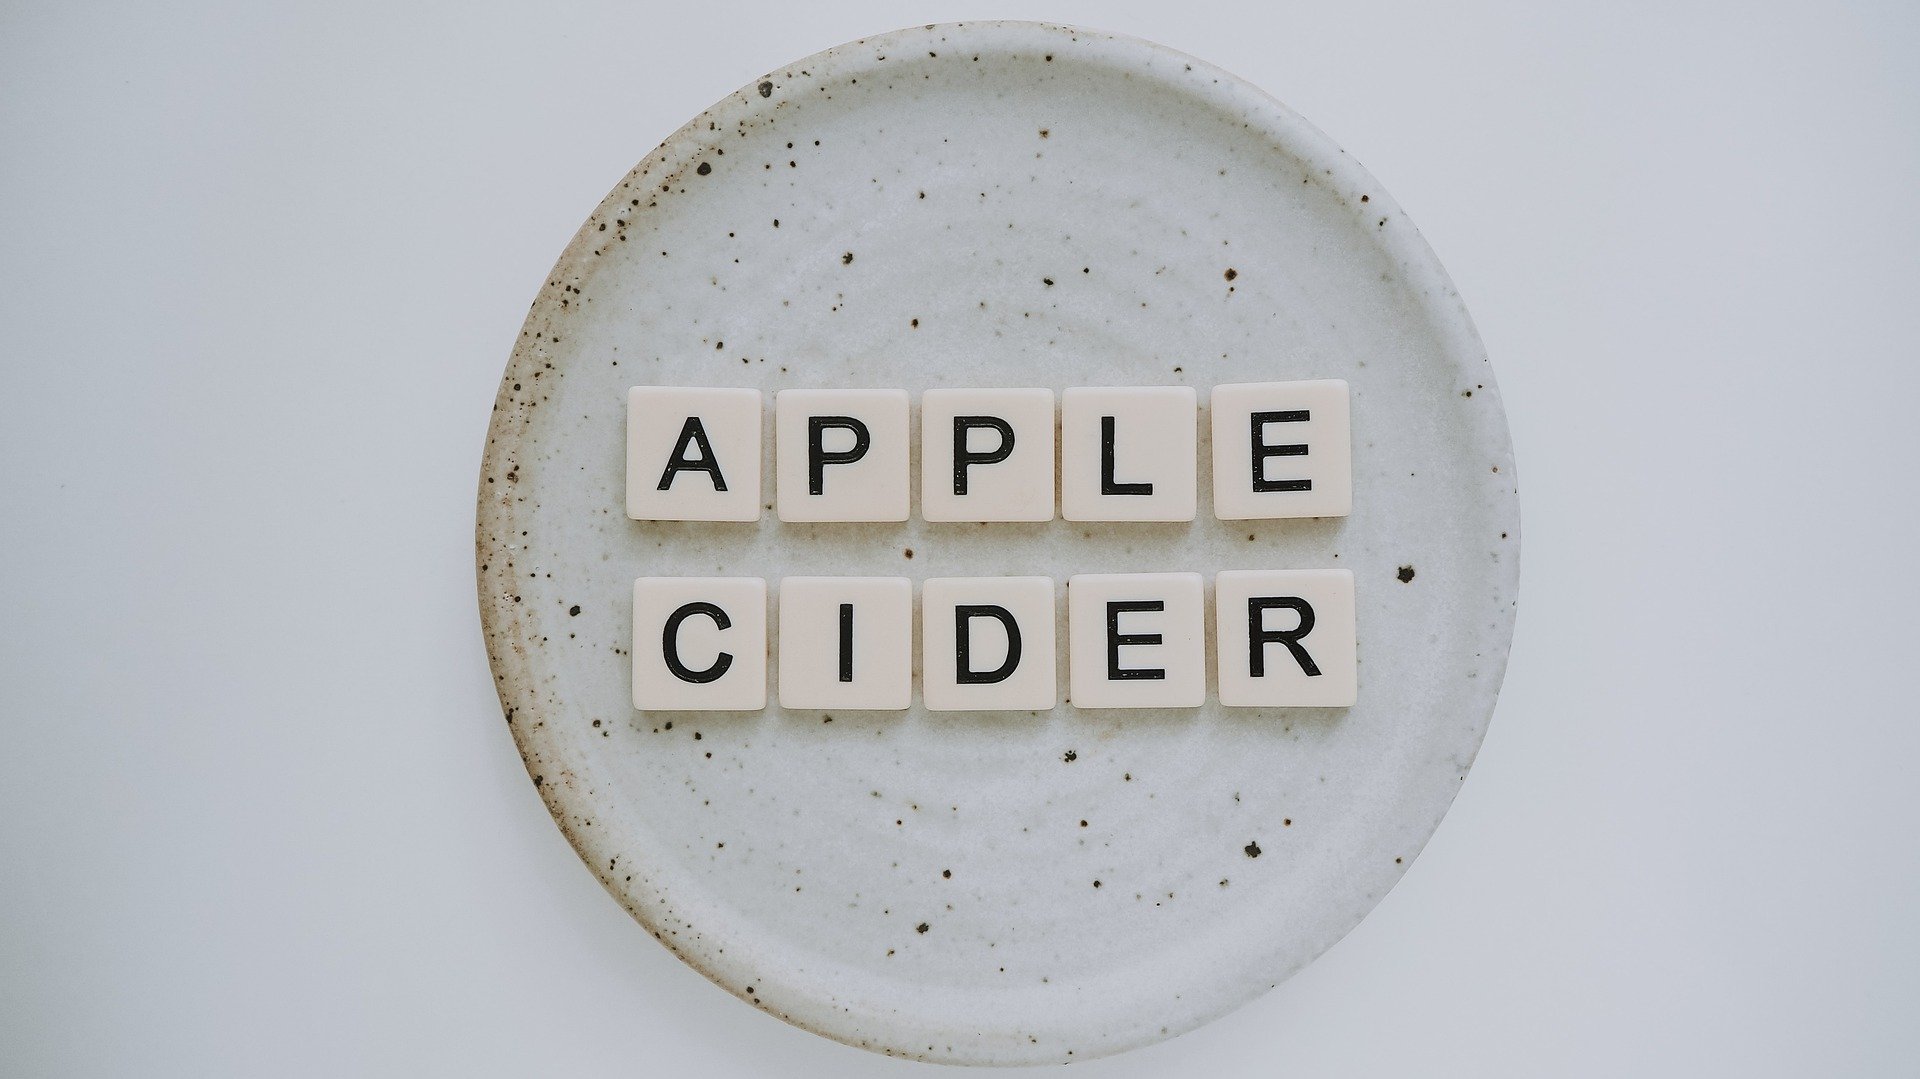 apple cider vinegar weight loss